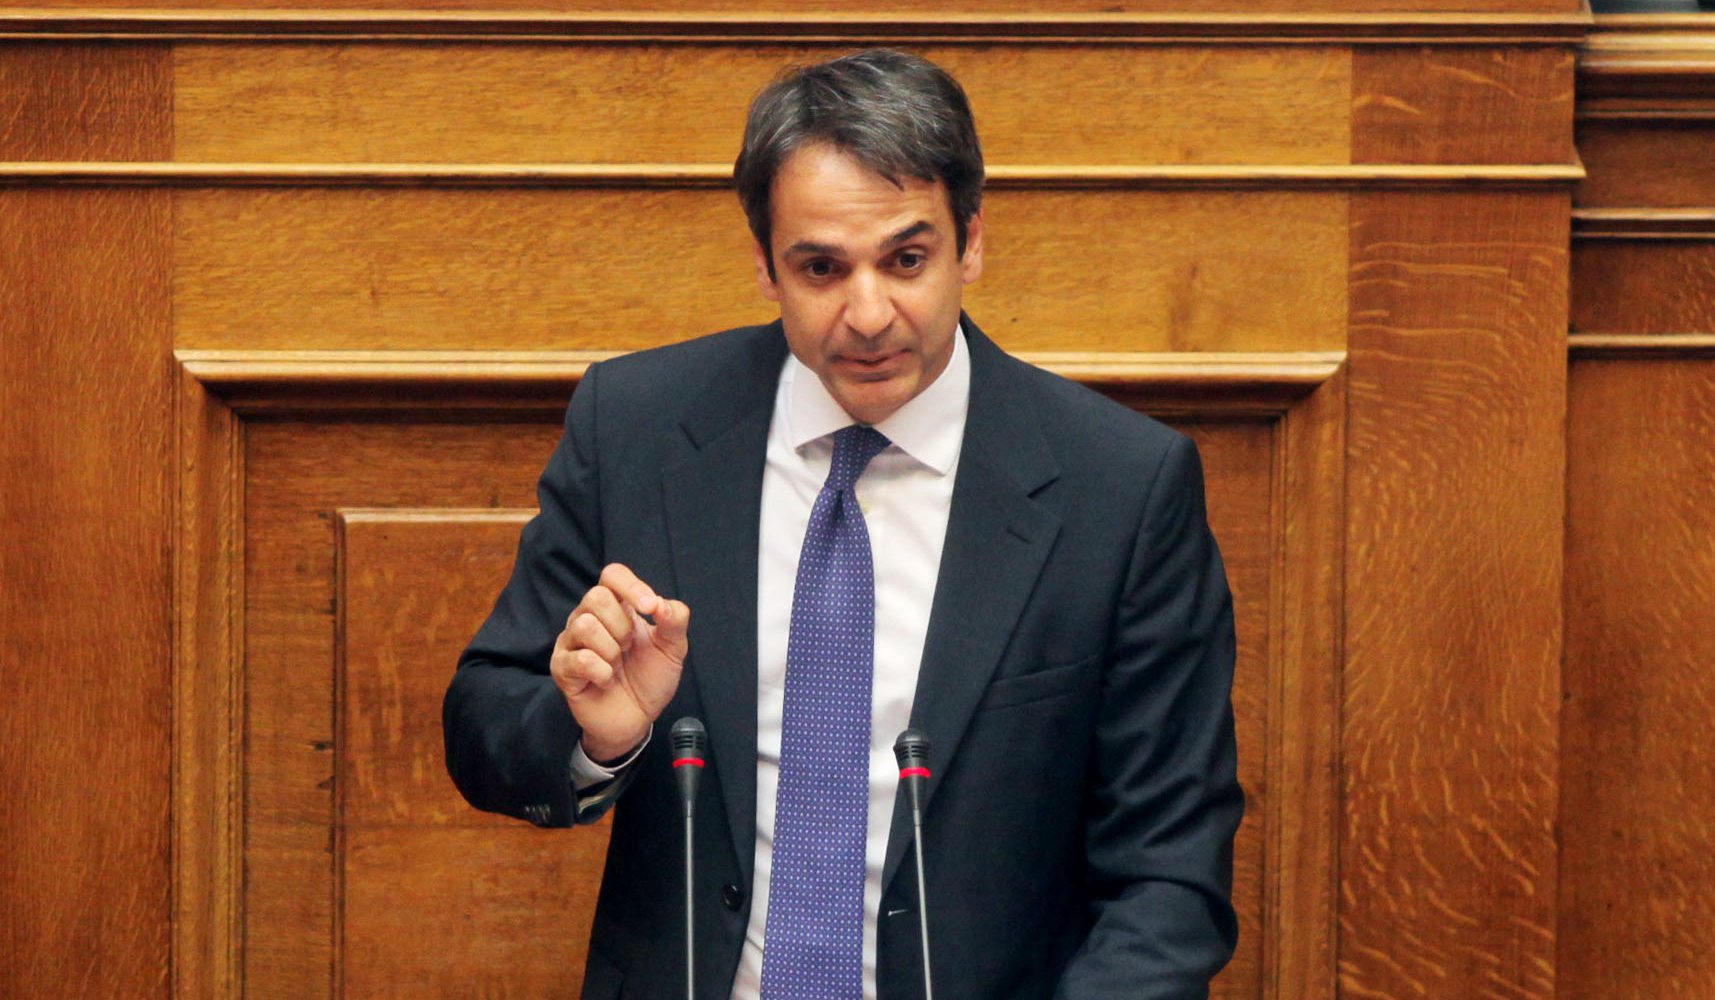 Μητσοτάκης: Τα προβλήματα μεταξύ Ελλάδας και Τουρκίας αφορούν την Ευρώπη, καθώς επηρεάζουν την Ανατολική Μεσόγειο